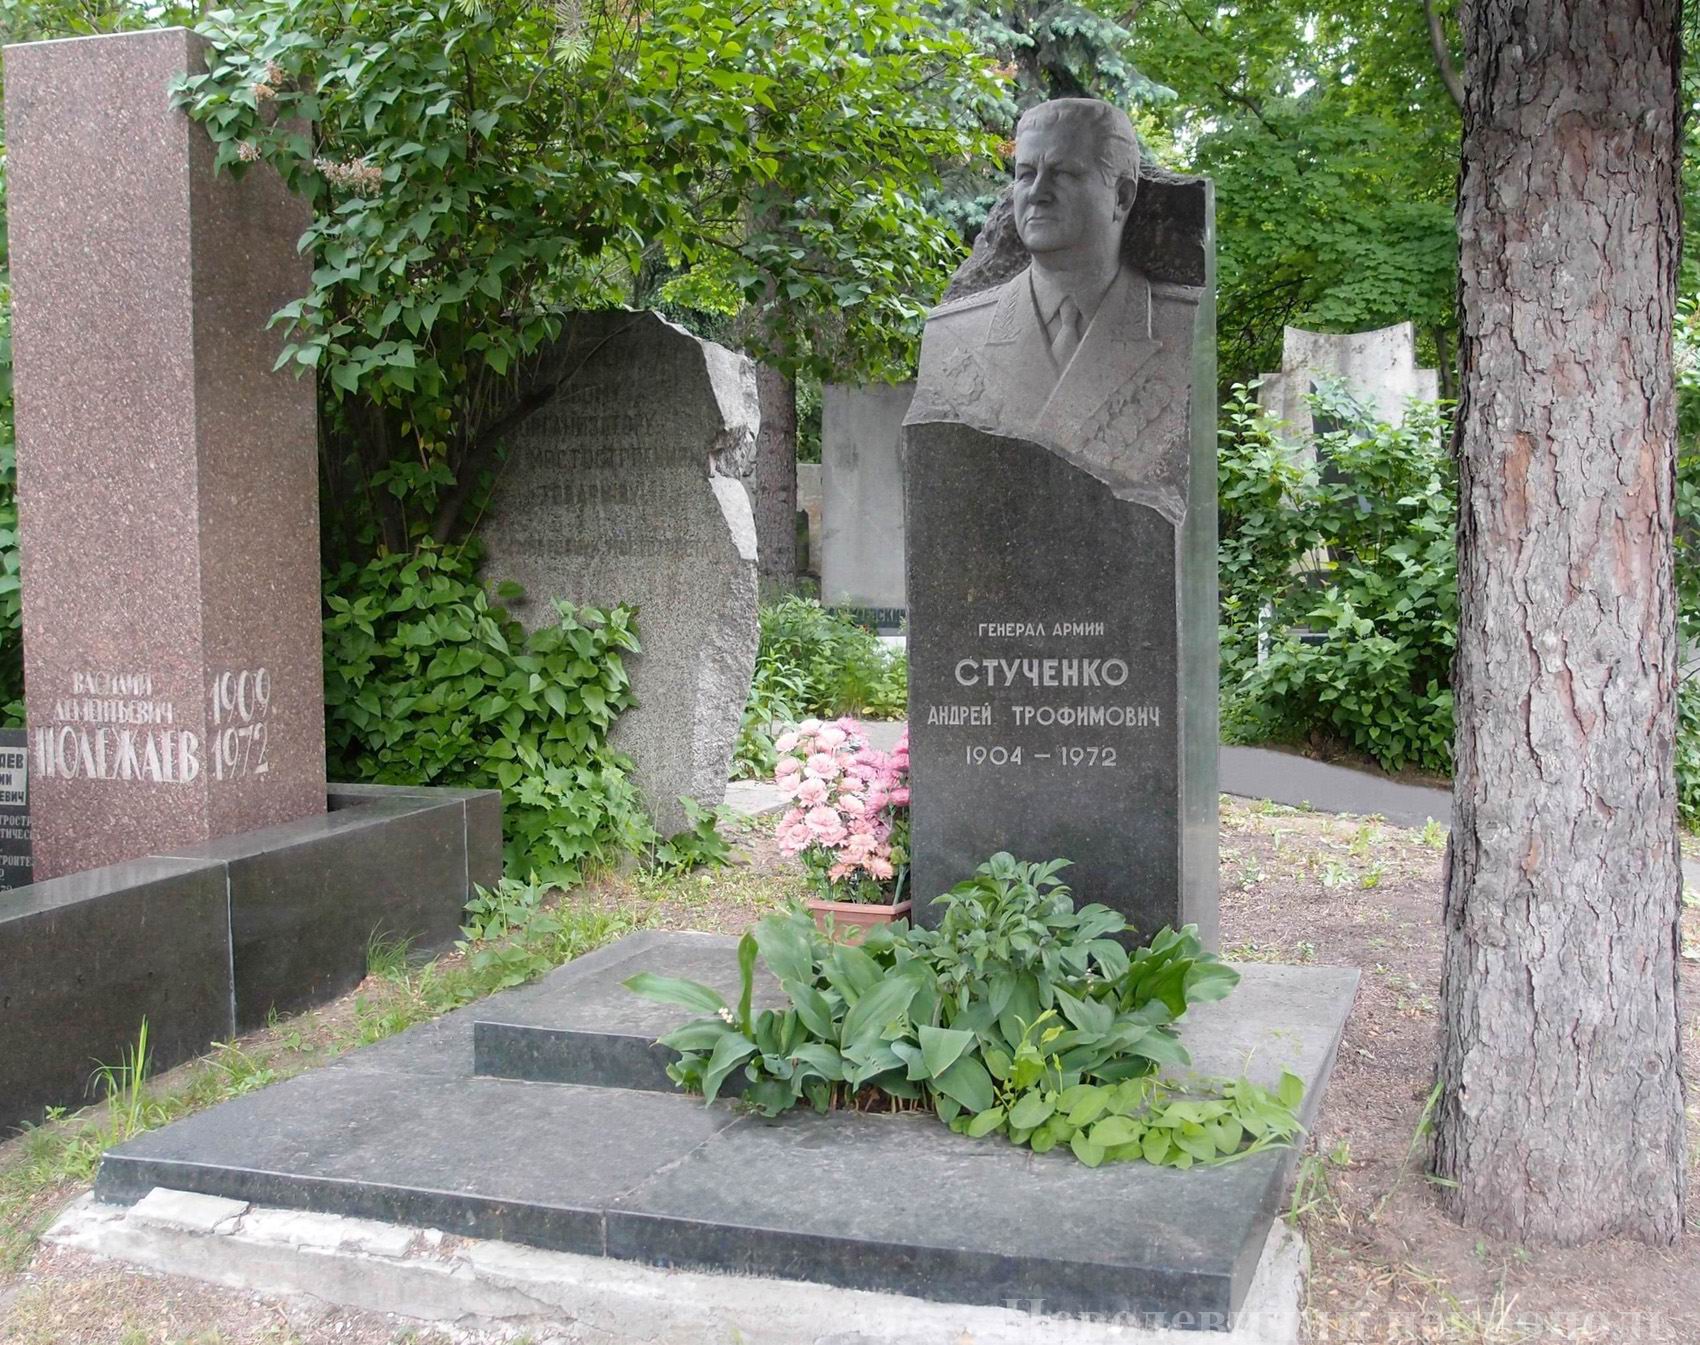 Памятник на могиле Стученко А.Т. (1904–1972), на Новодевичьем кладбище (6–40–10). Нажмите левую кнопку мыши, чтобы увидеть фрагмент памятника.